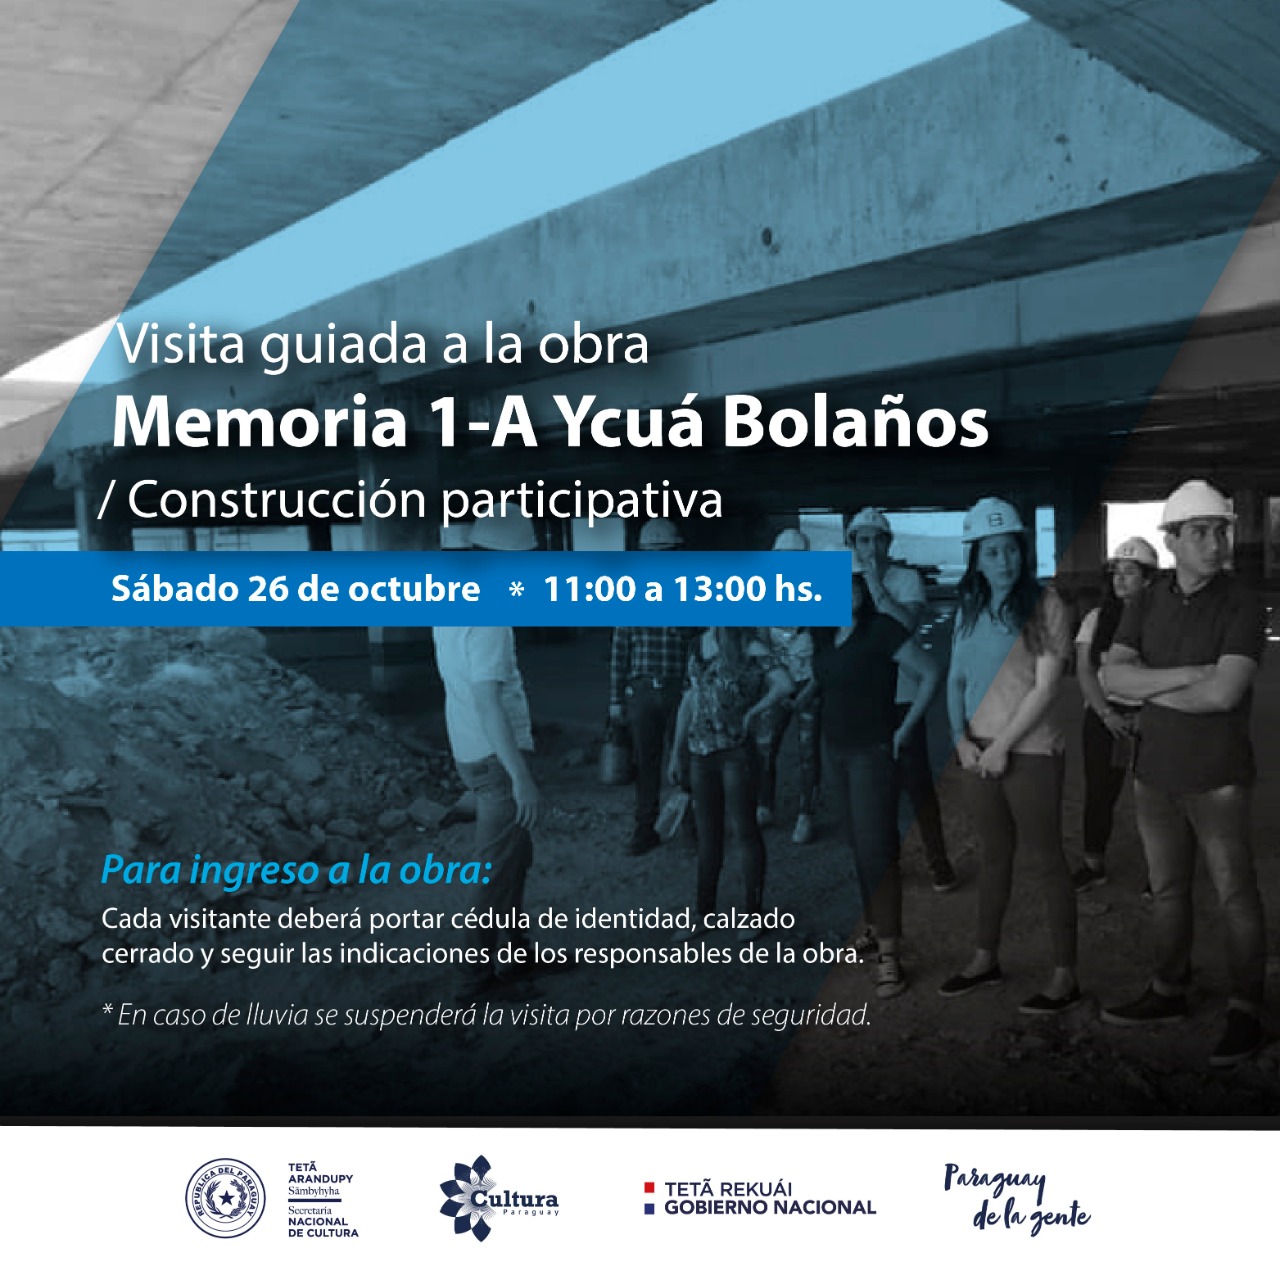 Este sábado, visita guiada y construcción participativa en Ycuá Bolaños imagen